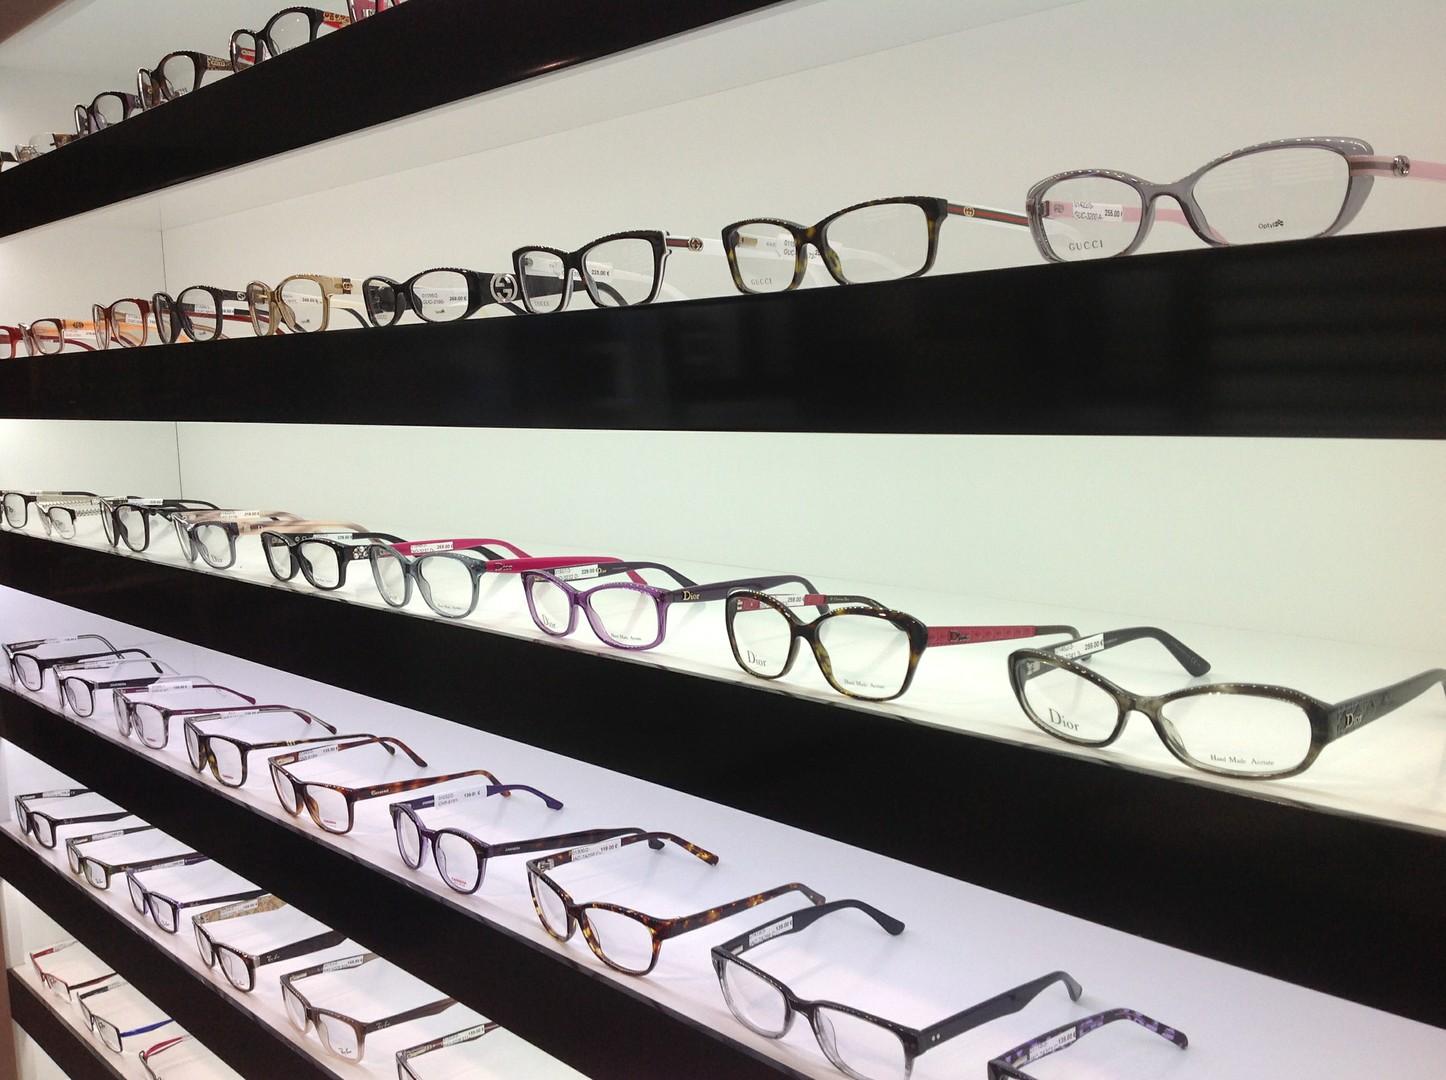 lunettes de vue - Zoom Optical à Sucy-en-Brie dans le Val-de-Marne (94)